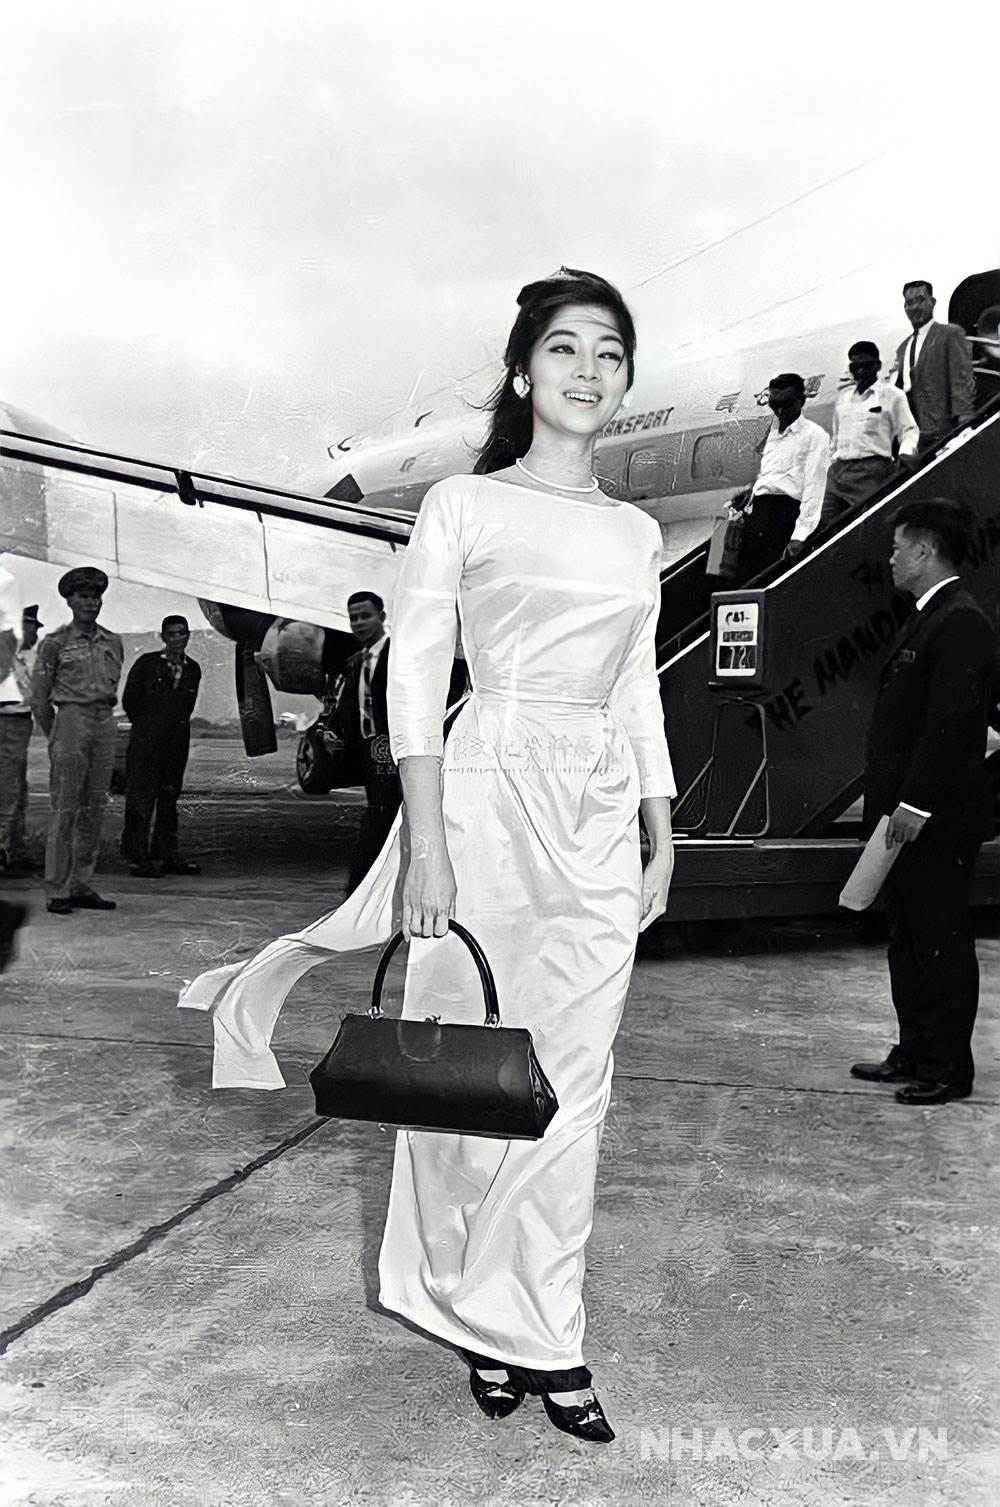 Hình ảnh Thẩm Thúy Hằng mặc áo dài tại sân bay được đánh giá là "kinh điển" trong lịch sử nhan sắc Việt.